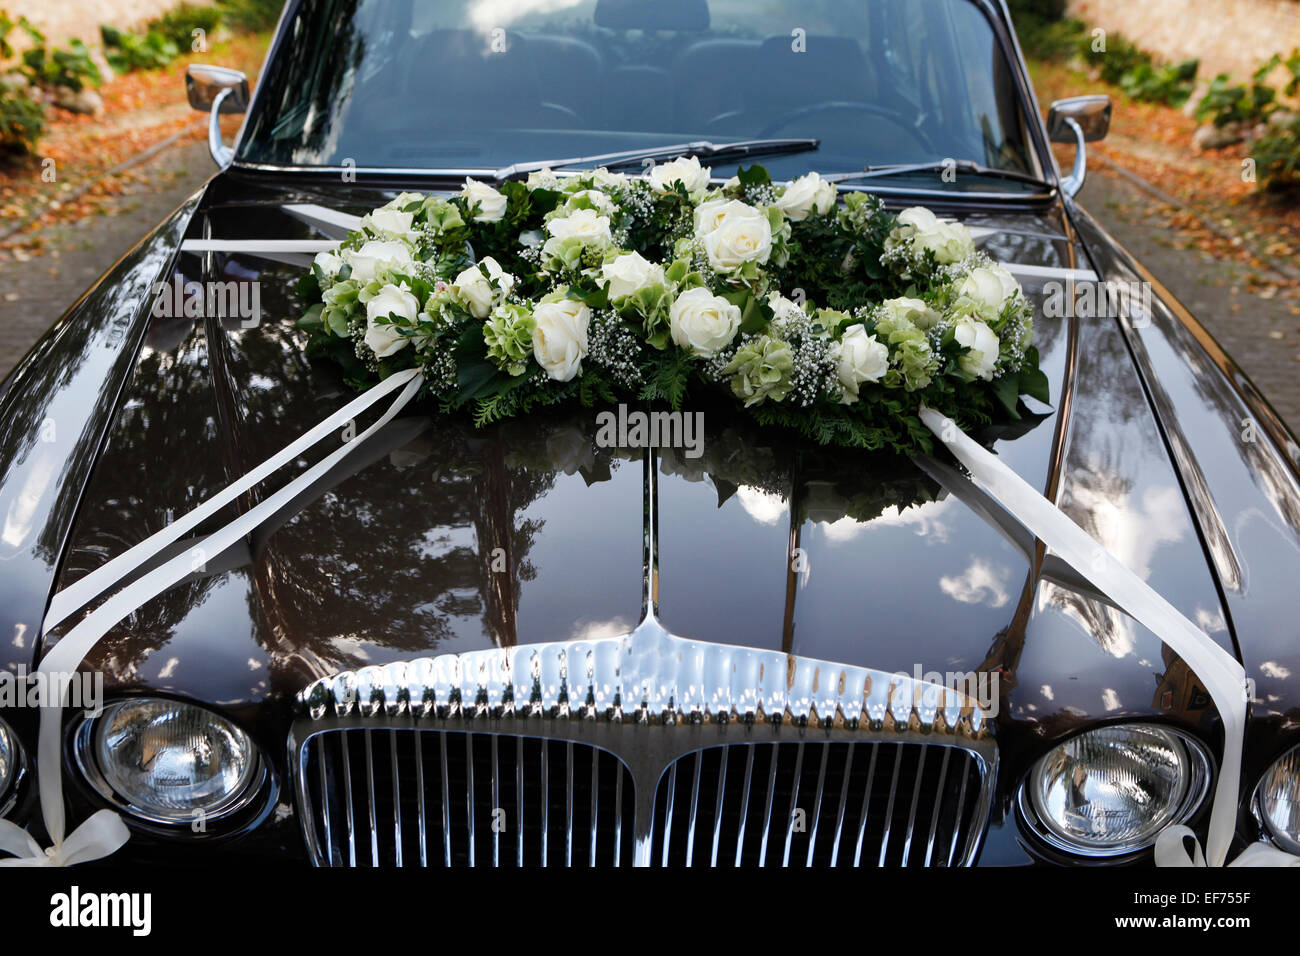 ein schwarzes Hochzeitsauto mit Blumenschmuck auf der Motorhaube  Stockfotografie - Alamy